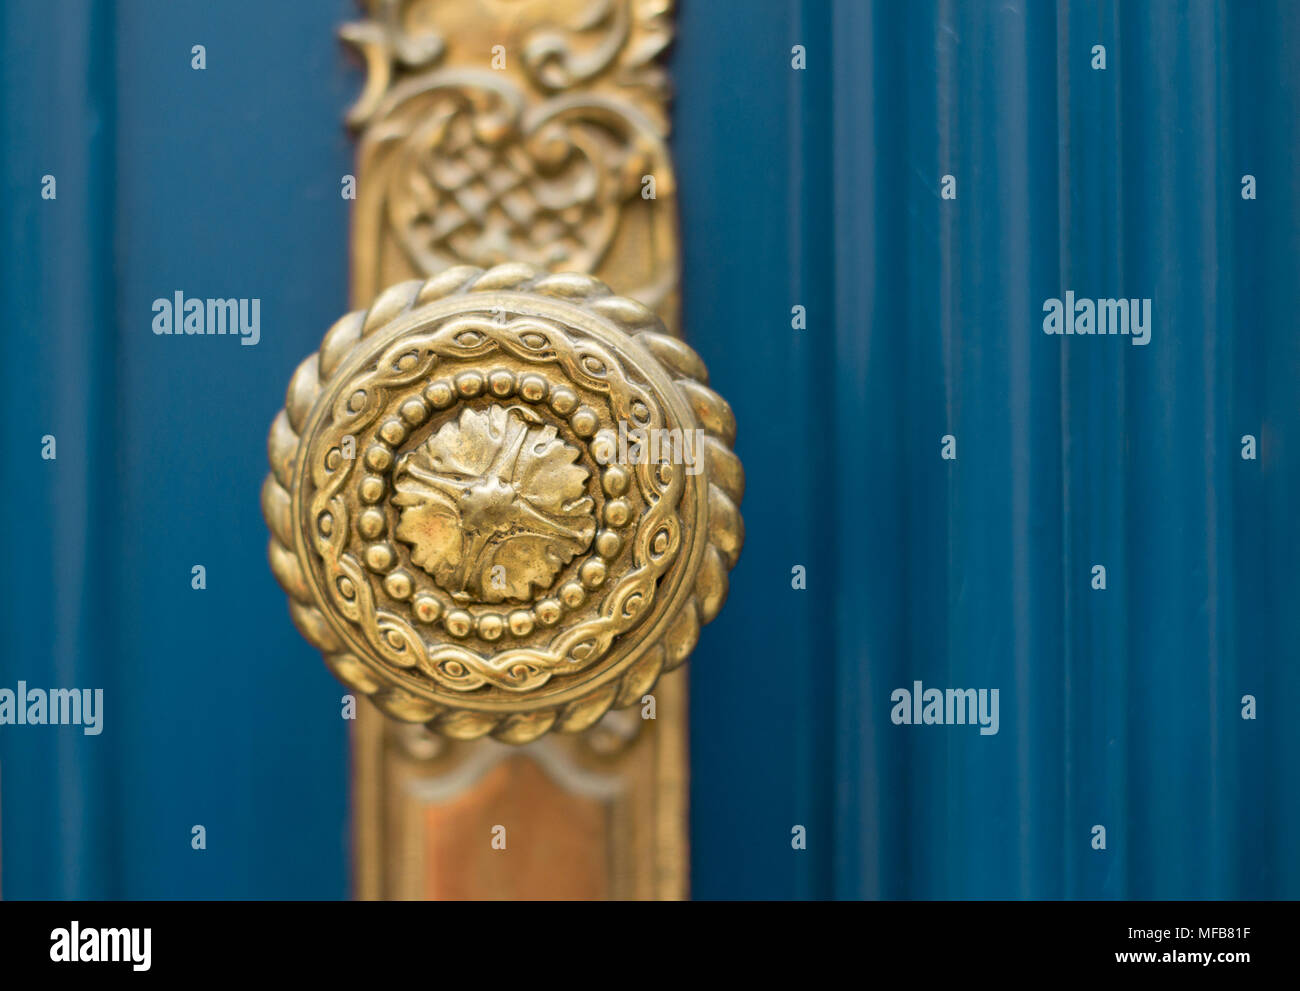 ornate gold door handle Stock Photo